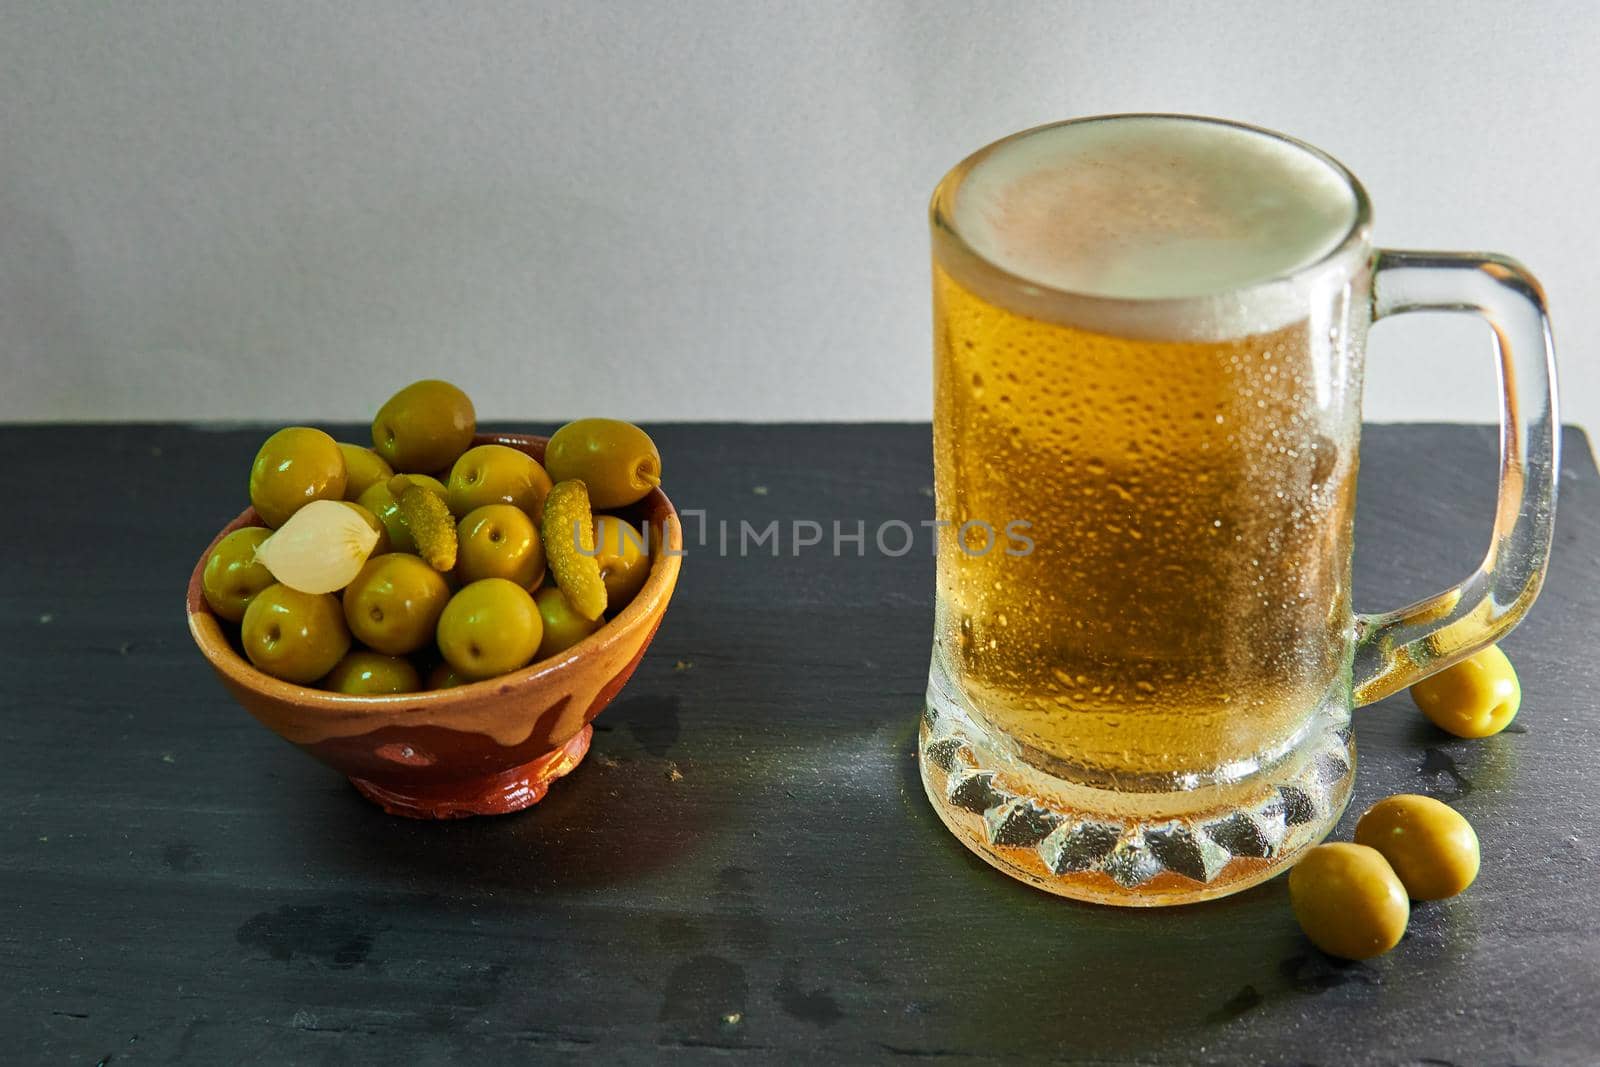 Black-based beer mug with olives